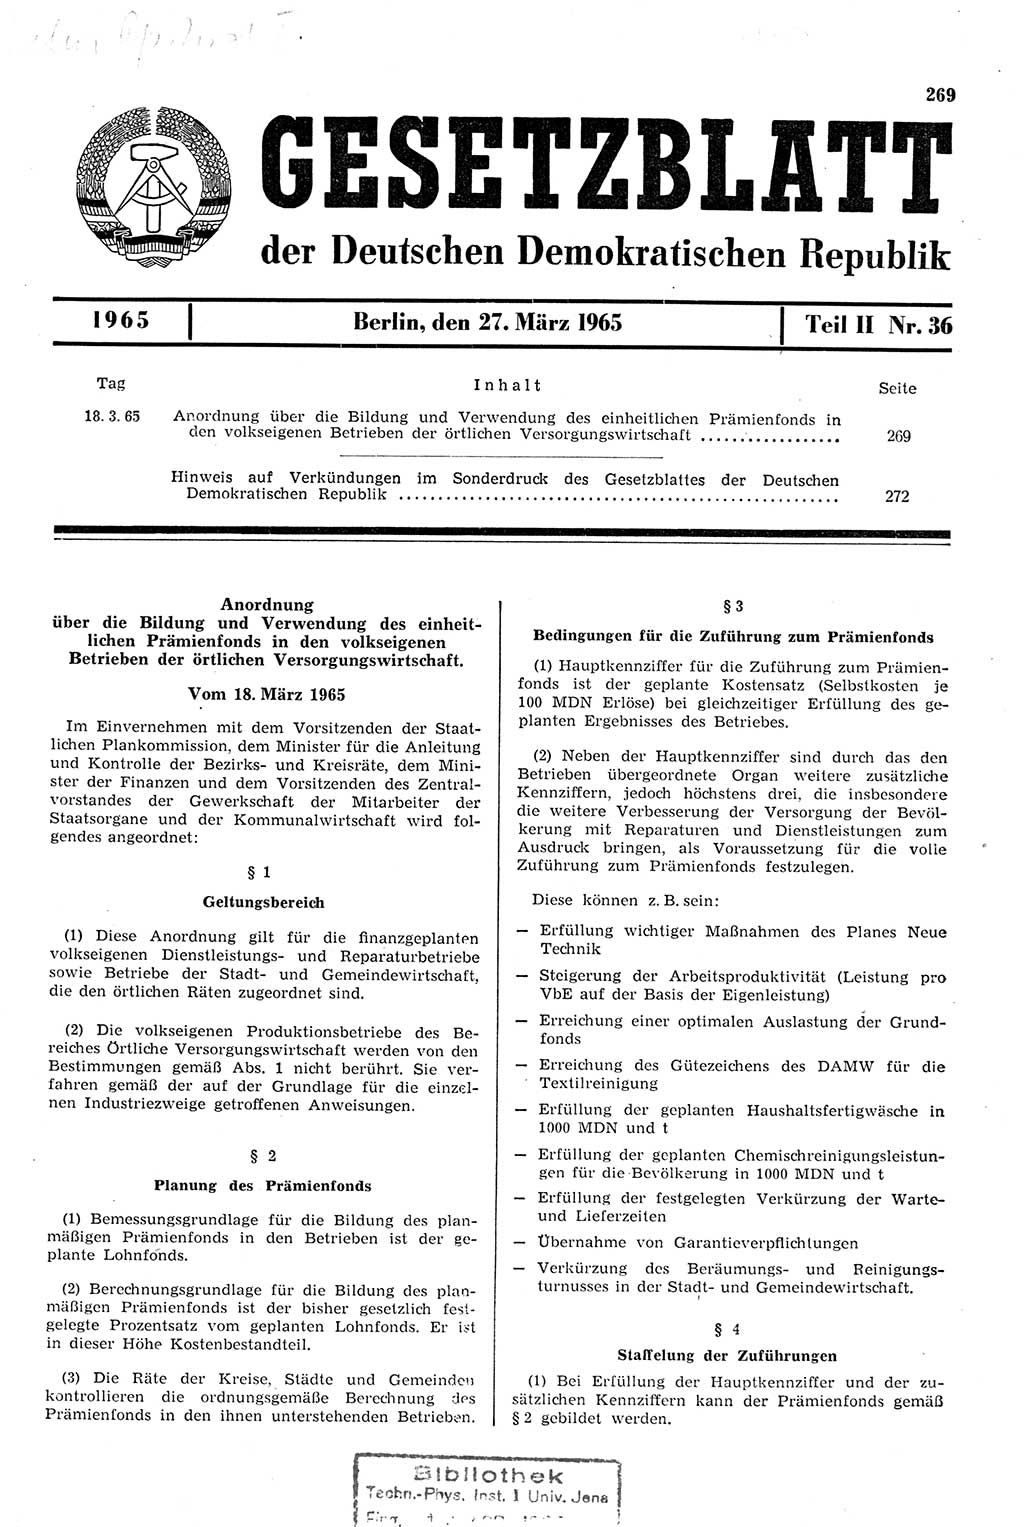 Gesetzblatt (GBl.) der Deutschen Demokratischen Republik (DDR) Teil ⅠⅠ 1965, Seite 269 (GBl. DDR ⅠⅠ 1965, S. 269)